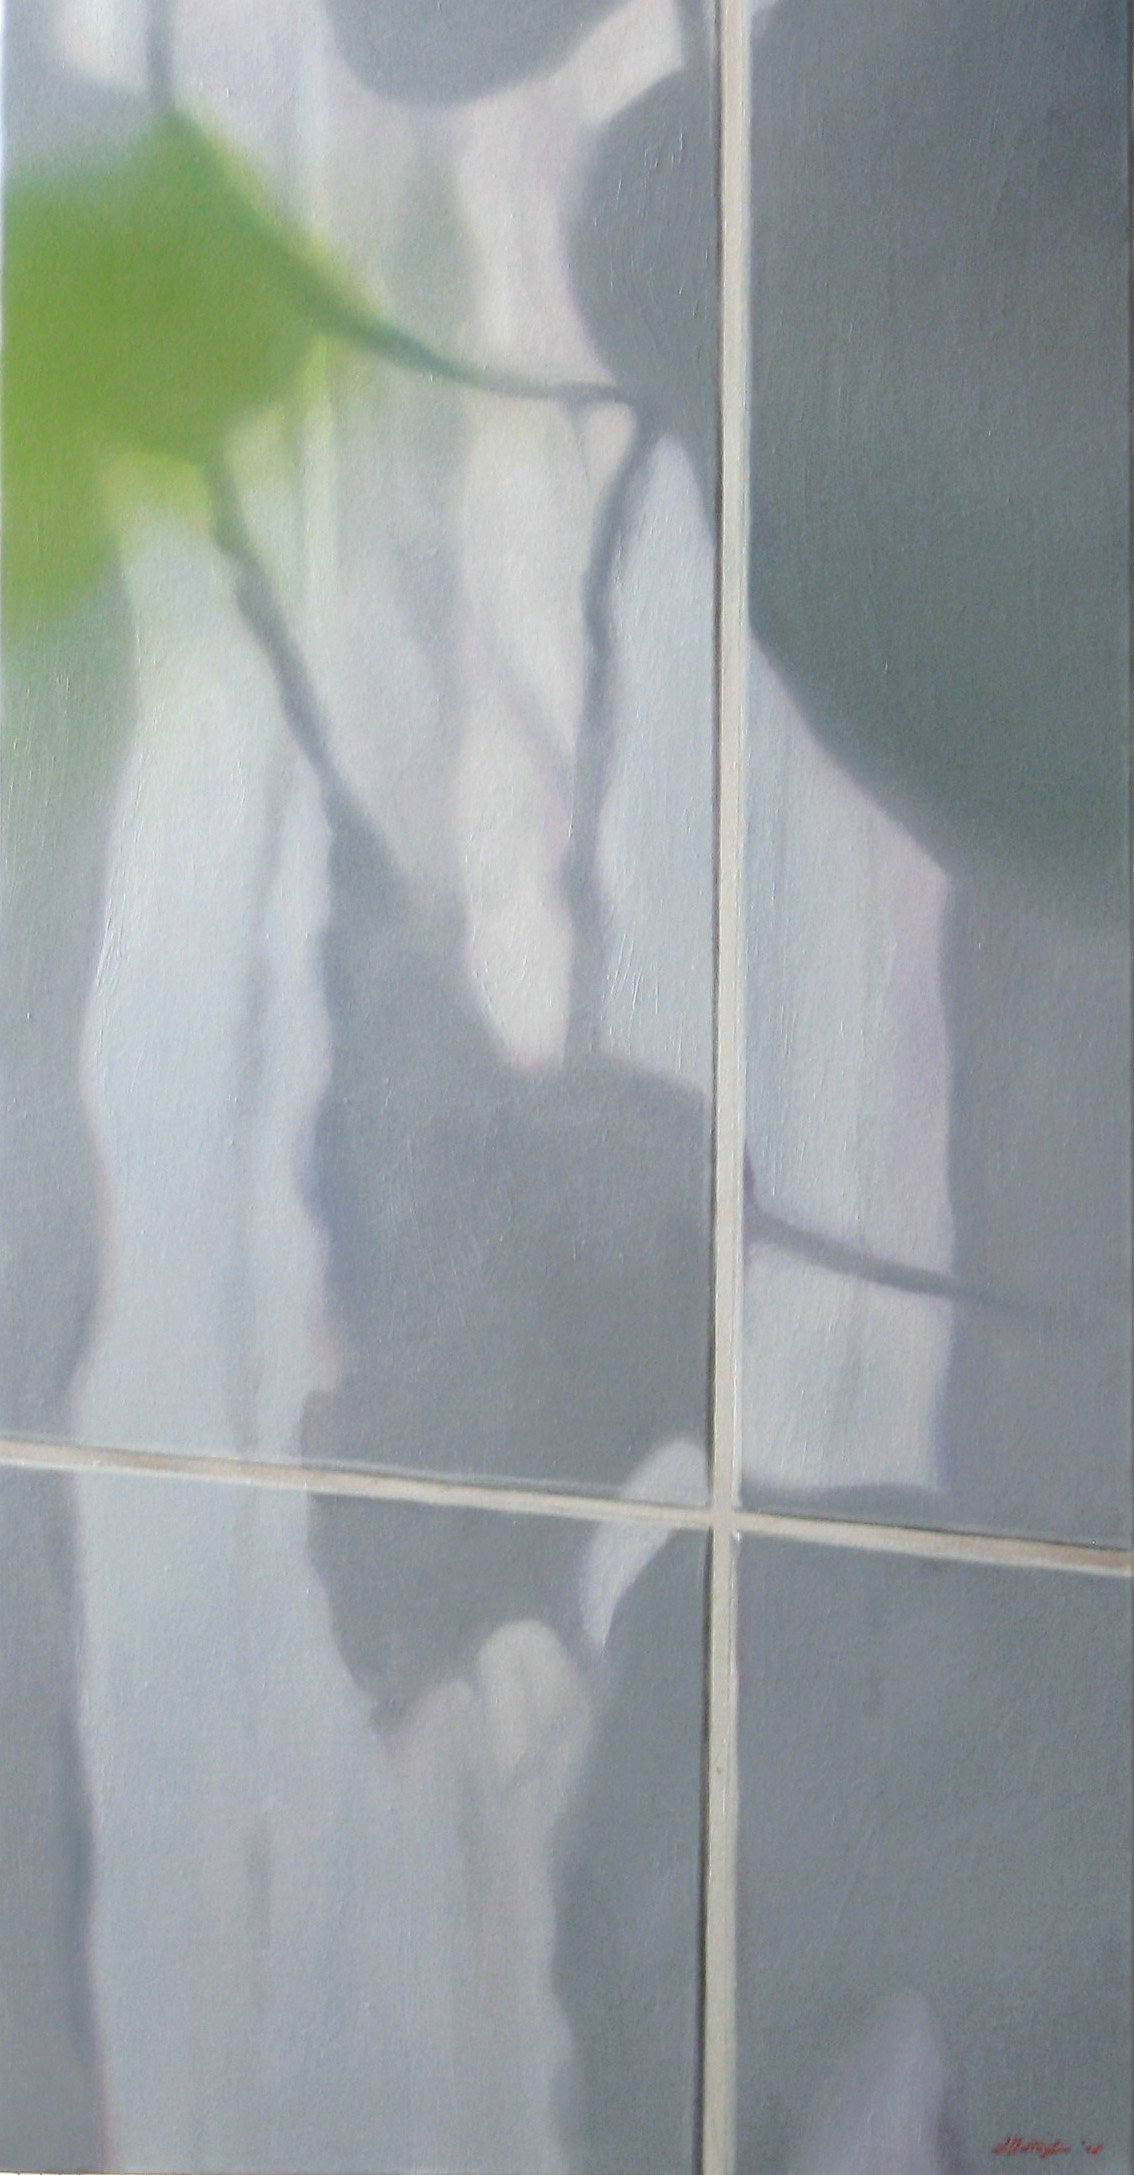 
'Natura morta' 
(2008), 
oil on canvas, 
100x50 cm
